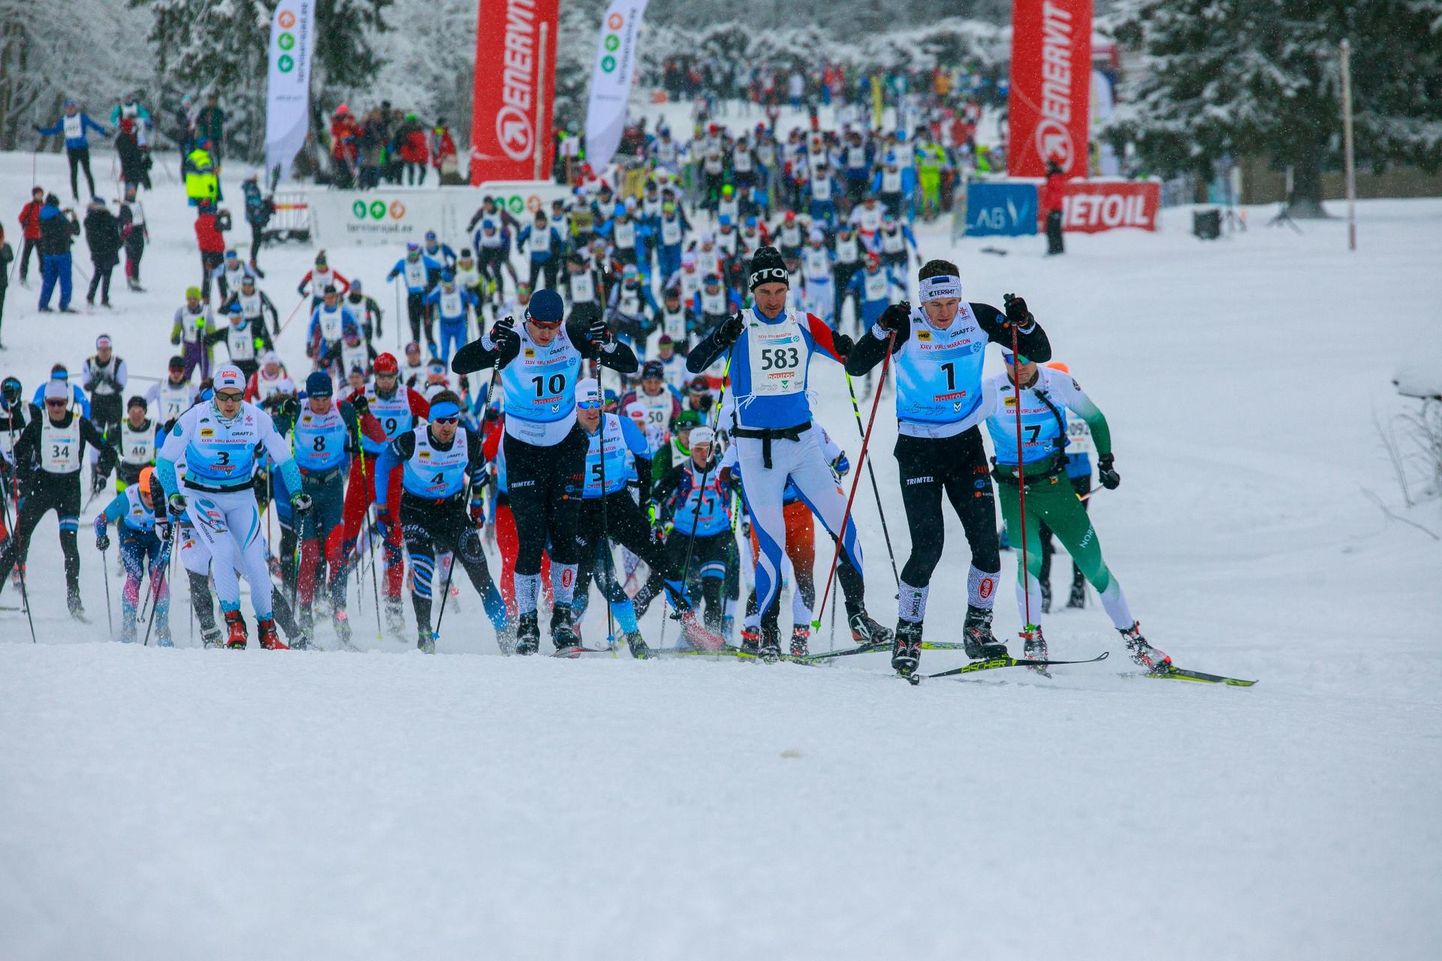 Estoloppeti pikamaasuusatamise sari startis Mõedakul ja jätkub eeloleval nädalalõpul taas Lääne-Viru maakonnas, kus on kavas Tamsalu-Neeruti maraton.